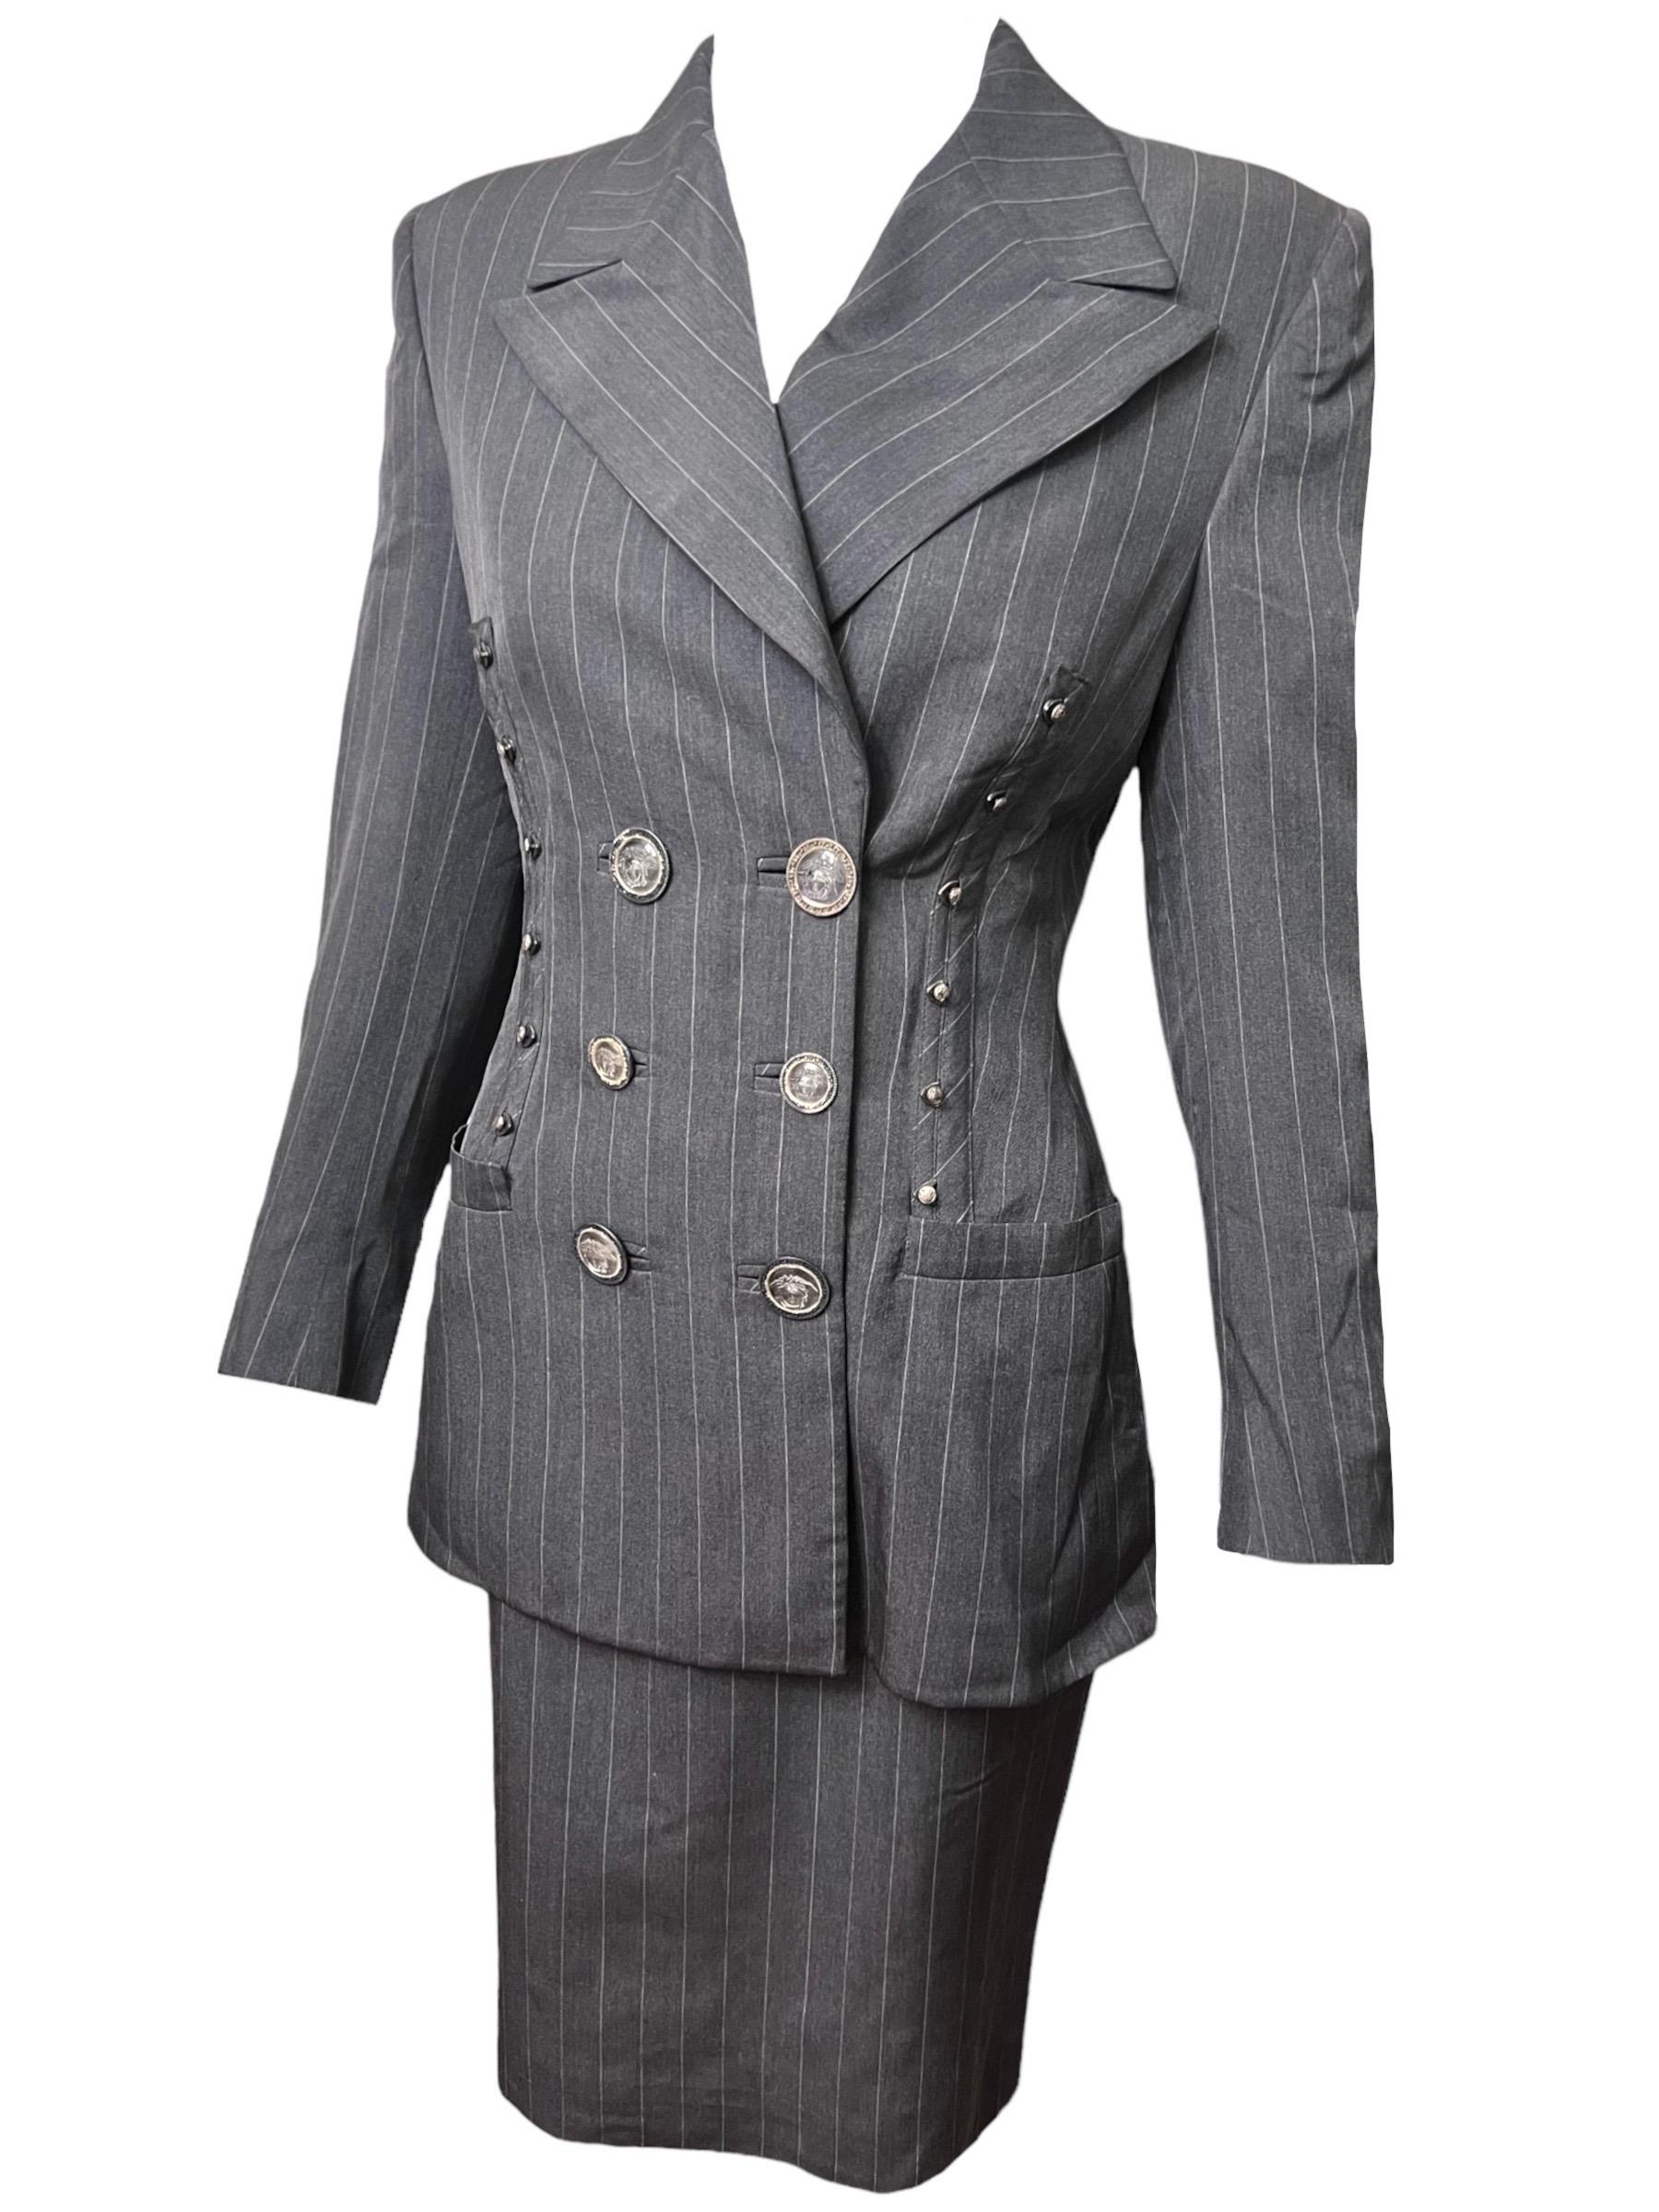 S/S 1995 Gianni Versace Runway Gray Pinstripe Medusa Medallion Skirt Suit For Sale 1